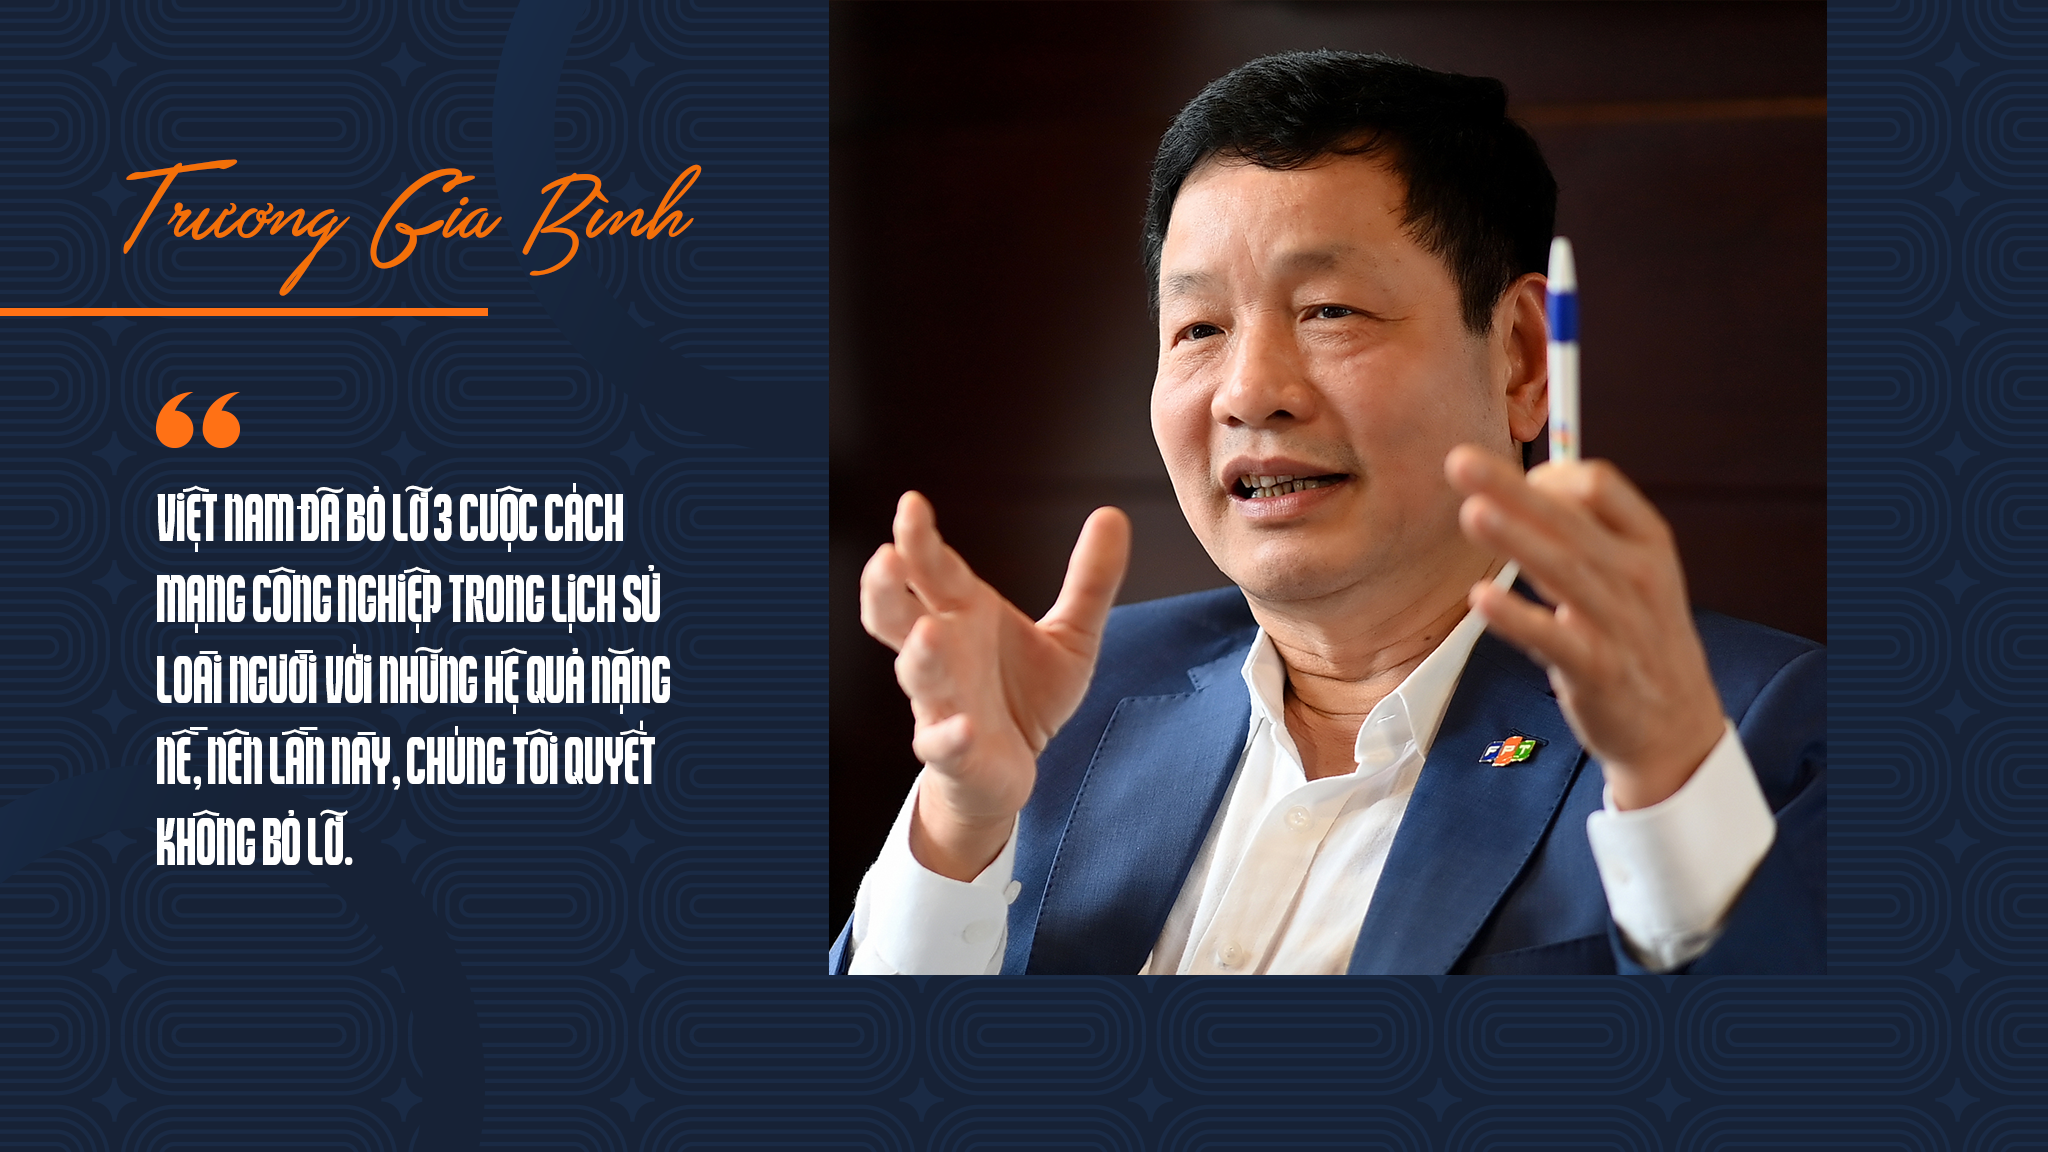 Chủ tịch FPT Trương Gia Bình: 33 năm xây dựng đế chế 4 tỷ USD từ 6 cây vàng - 19